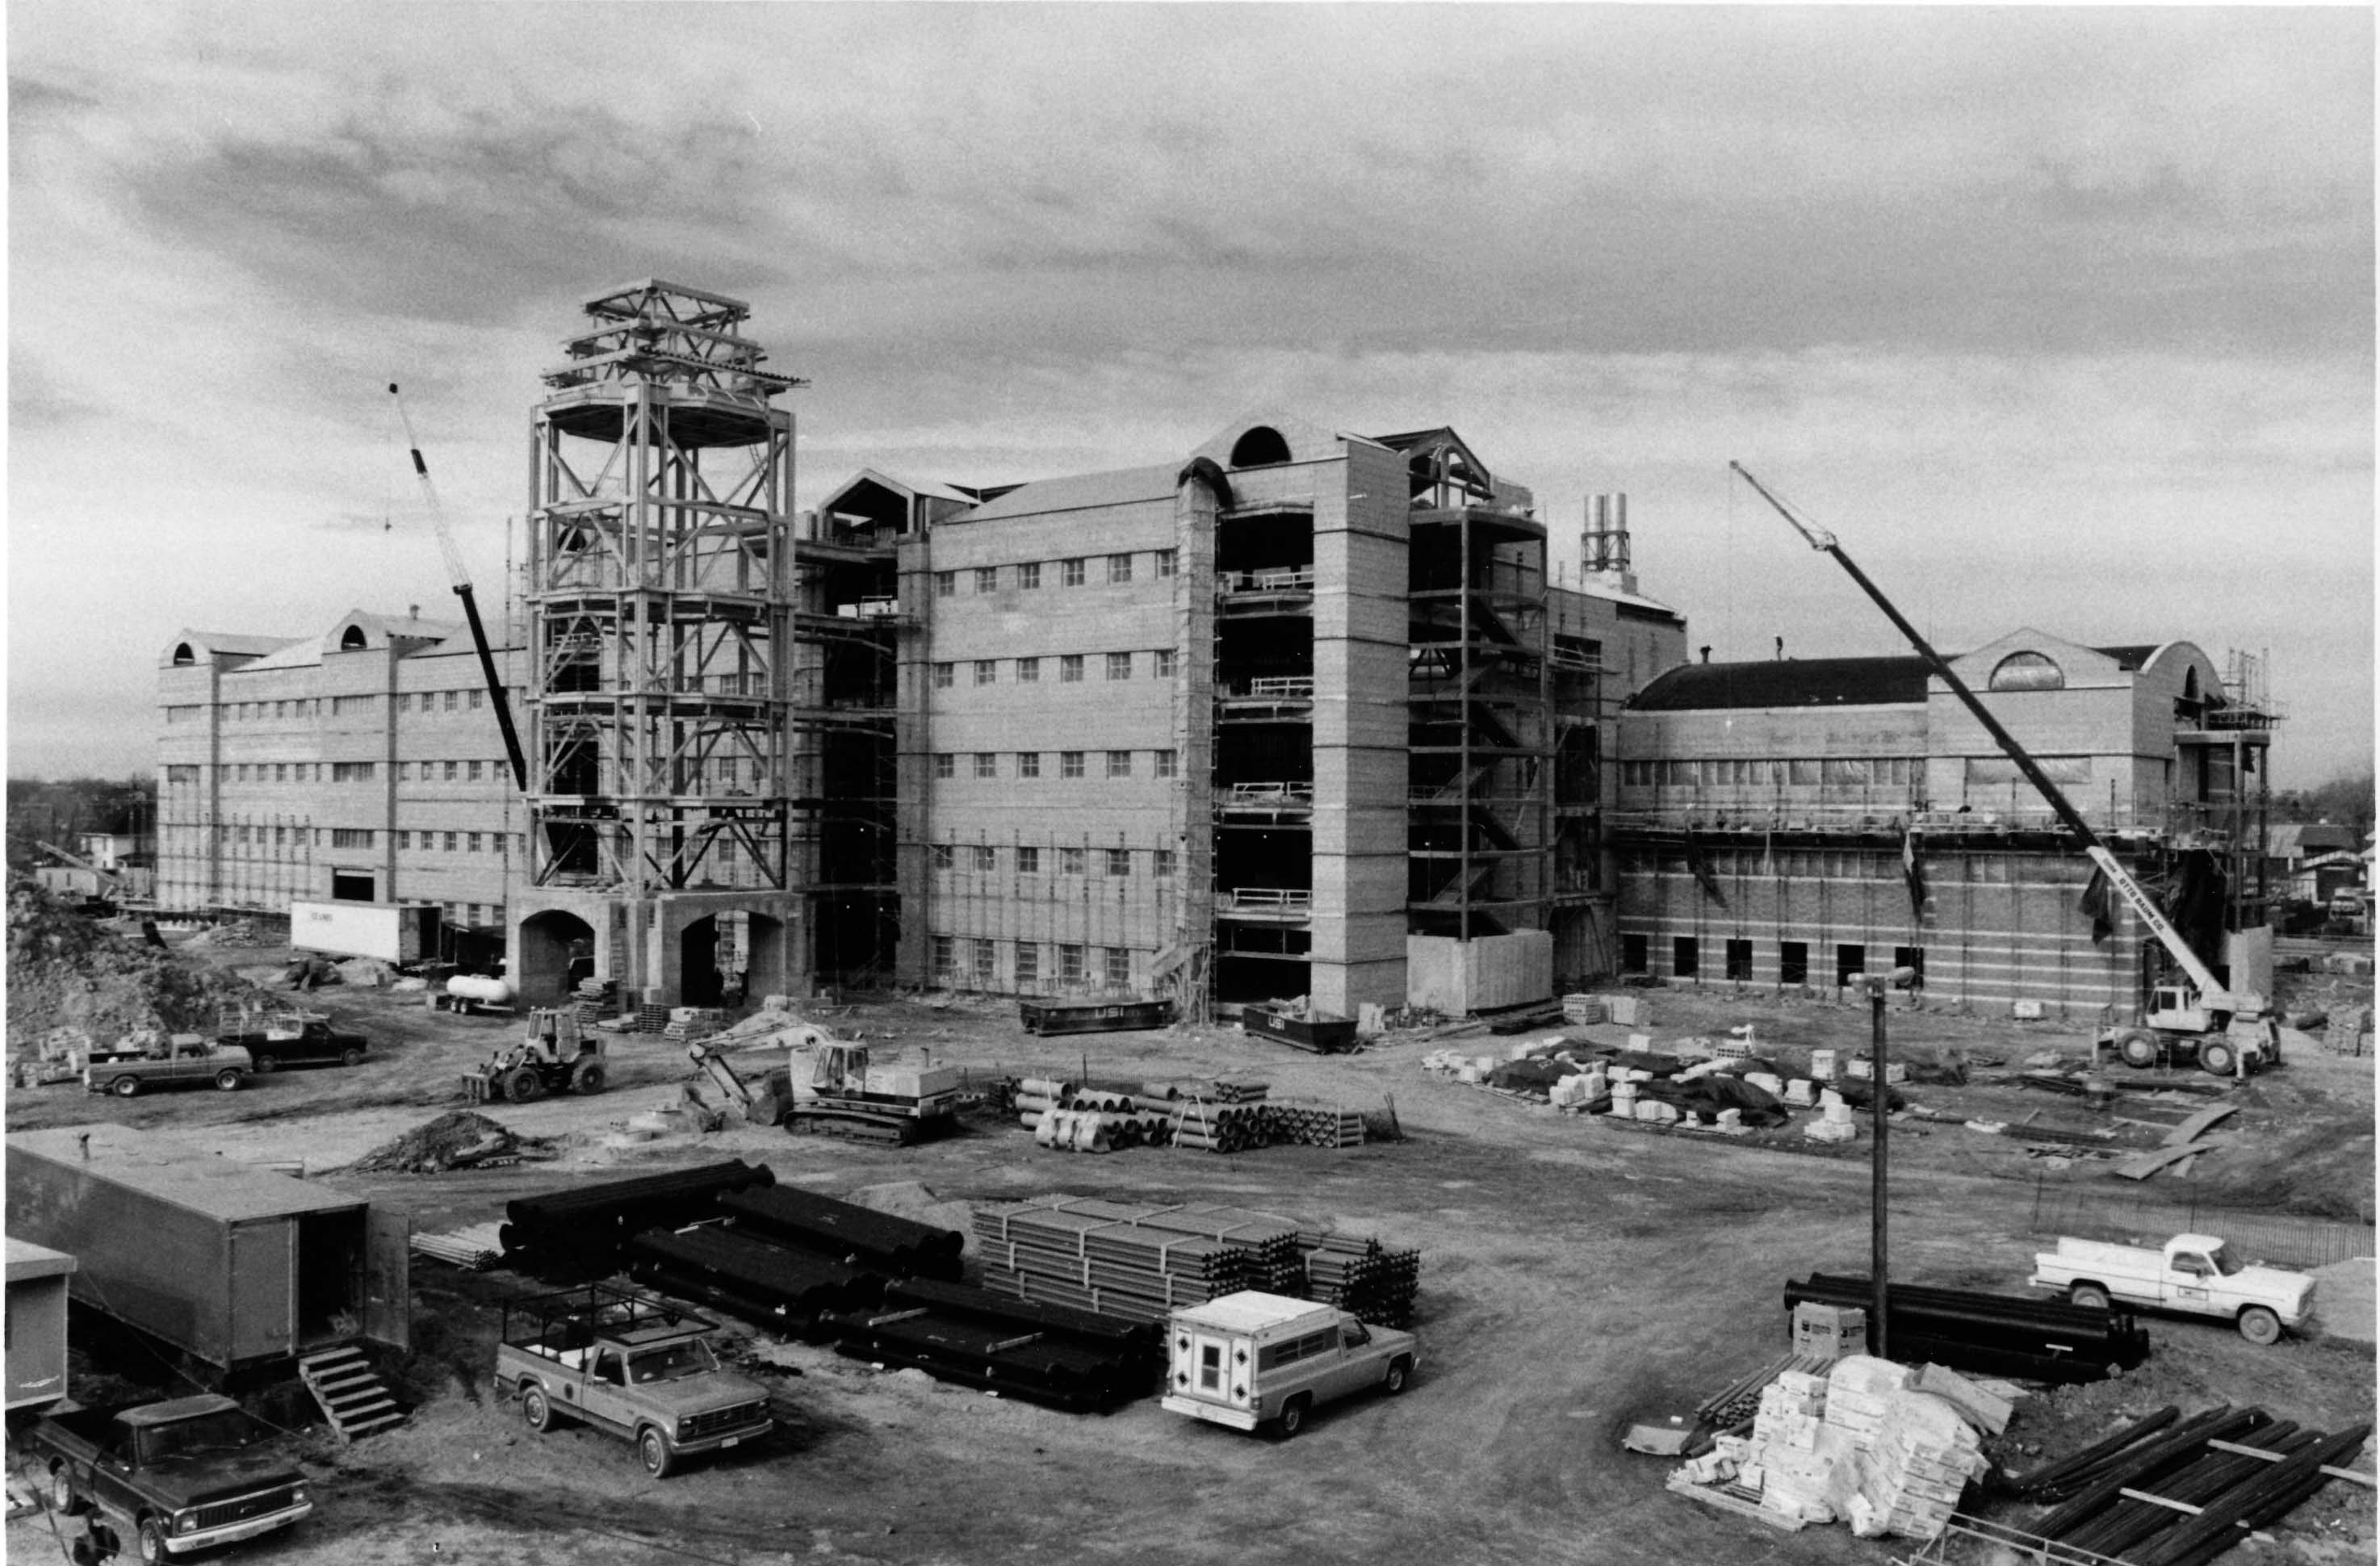 Beckman under construction in 1987.